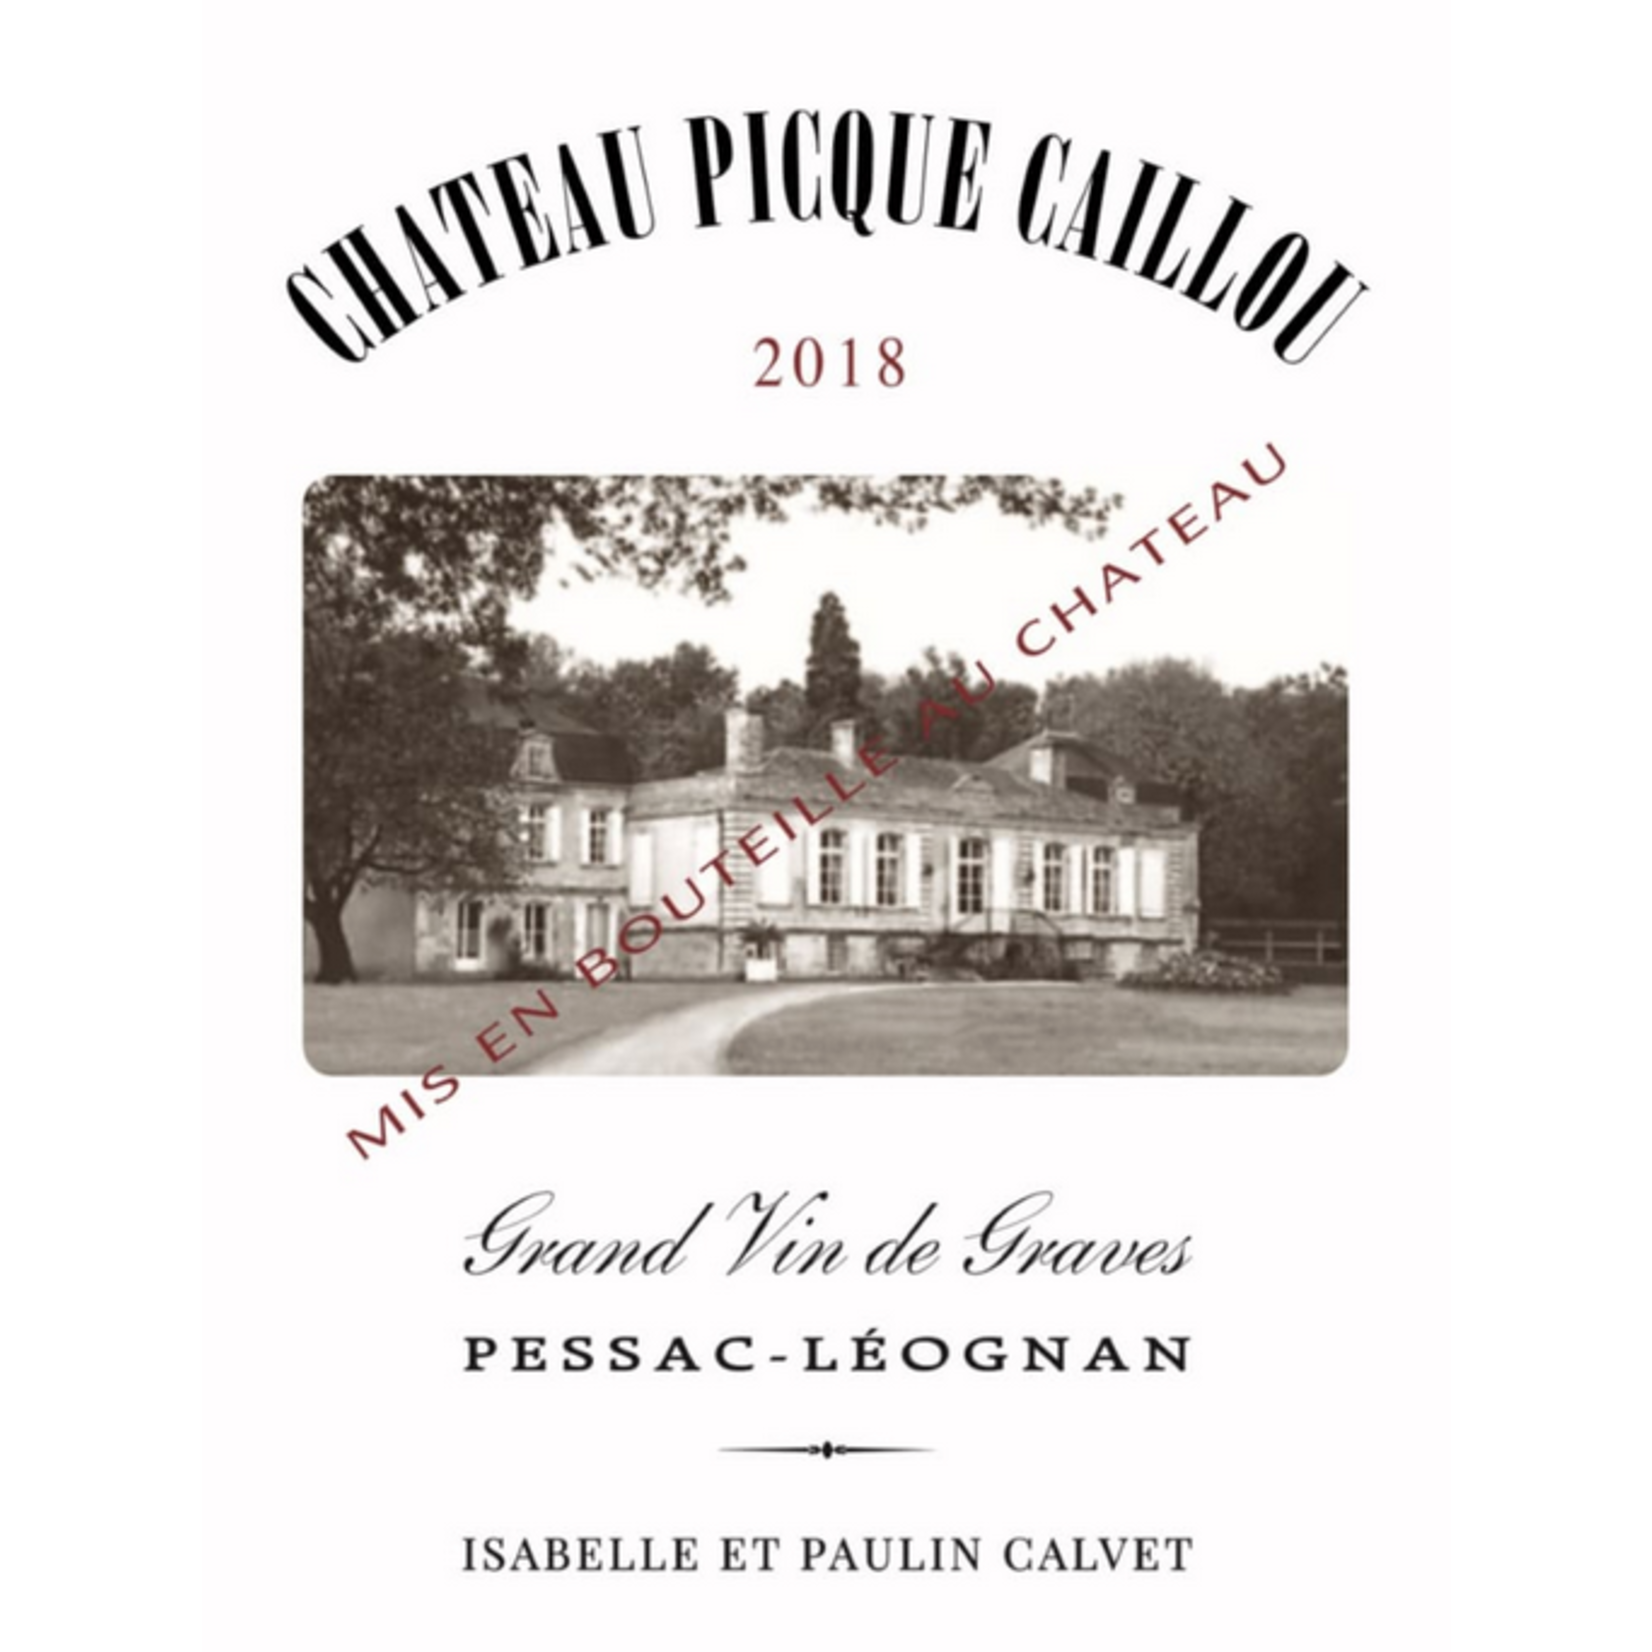 Ch Picque Caillou Chateau Picque Caillou Grand Vin de Graves 2019  Pessac-Leognan, Bordeaux, France